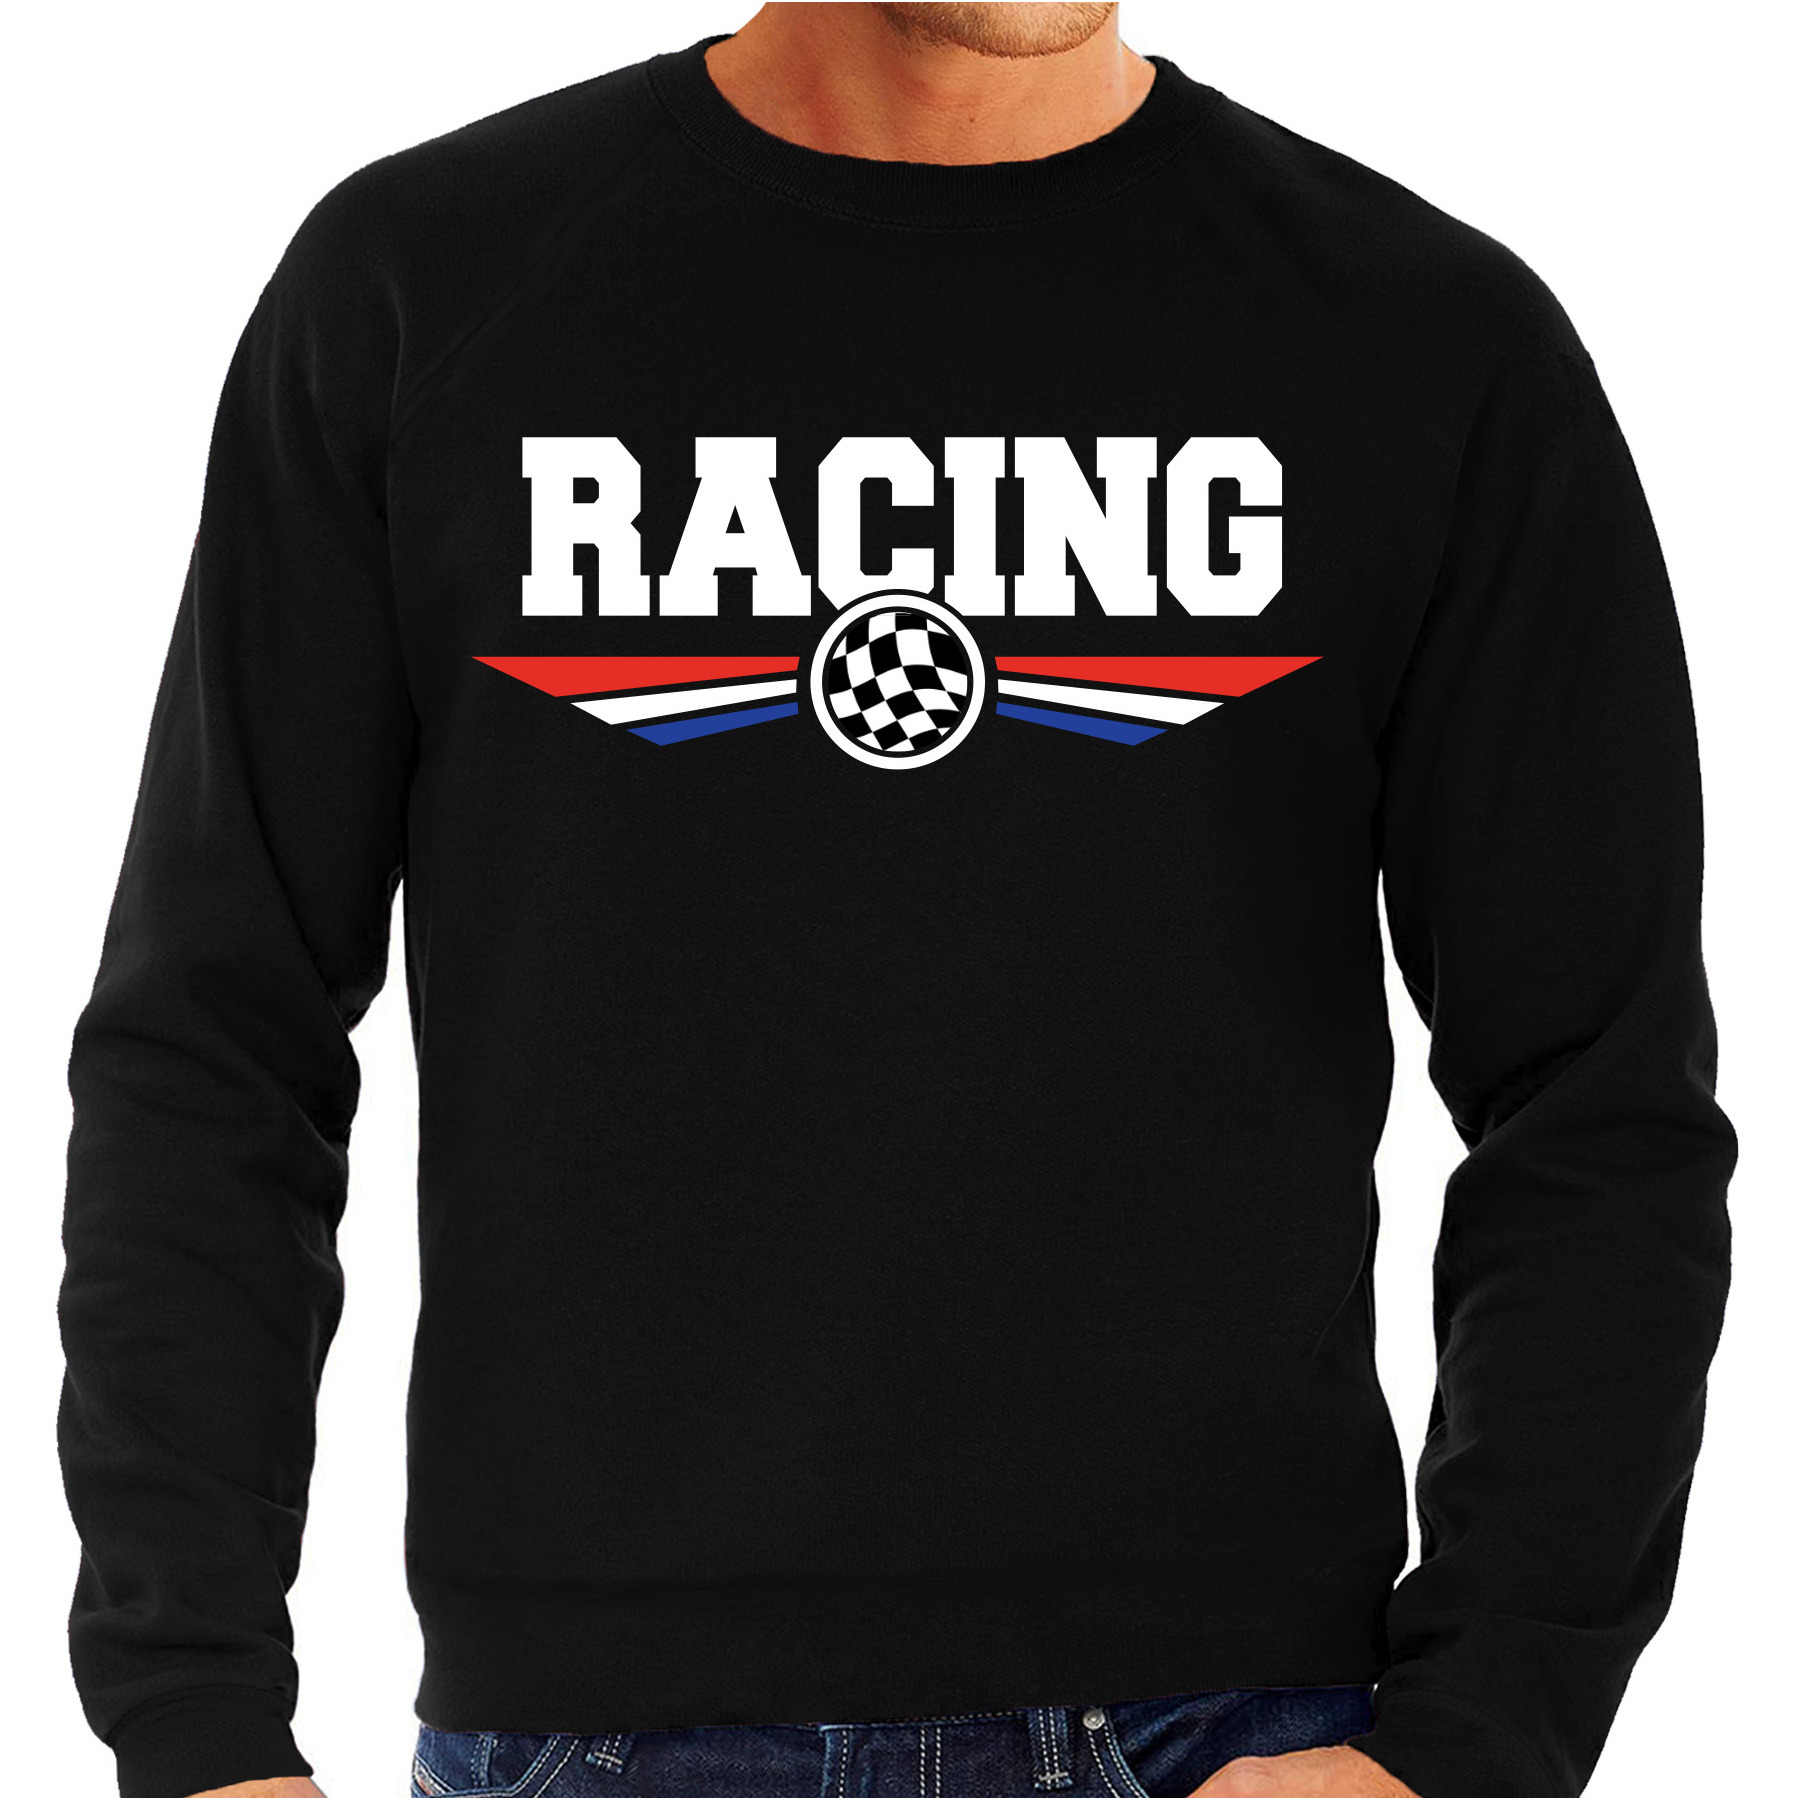 Racing race fan sweater - trui zwart voor heren